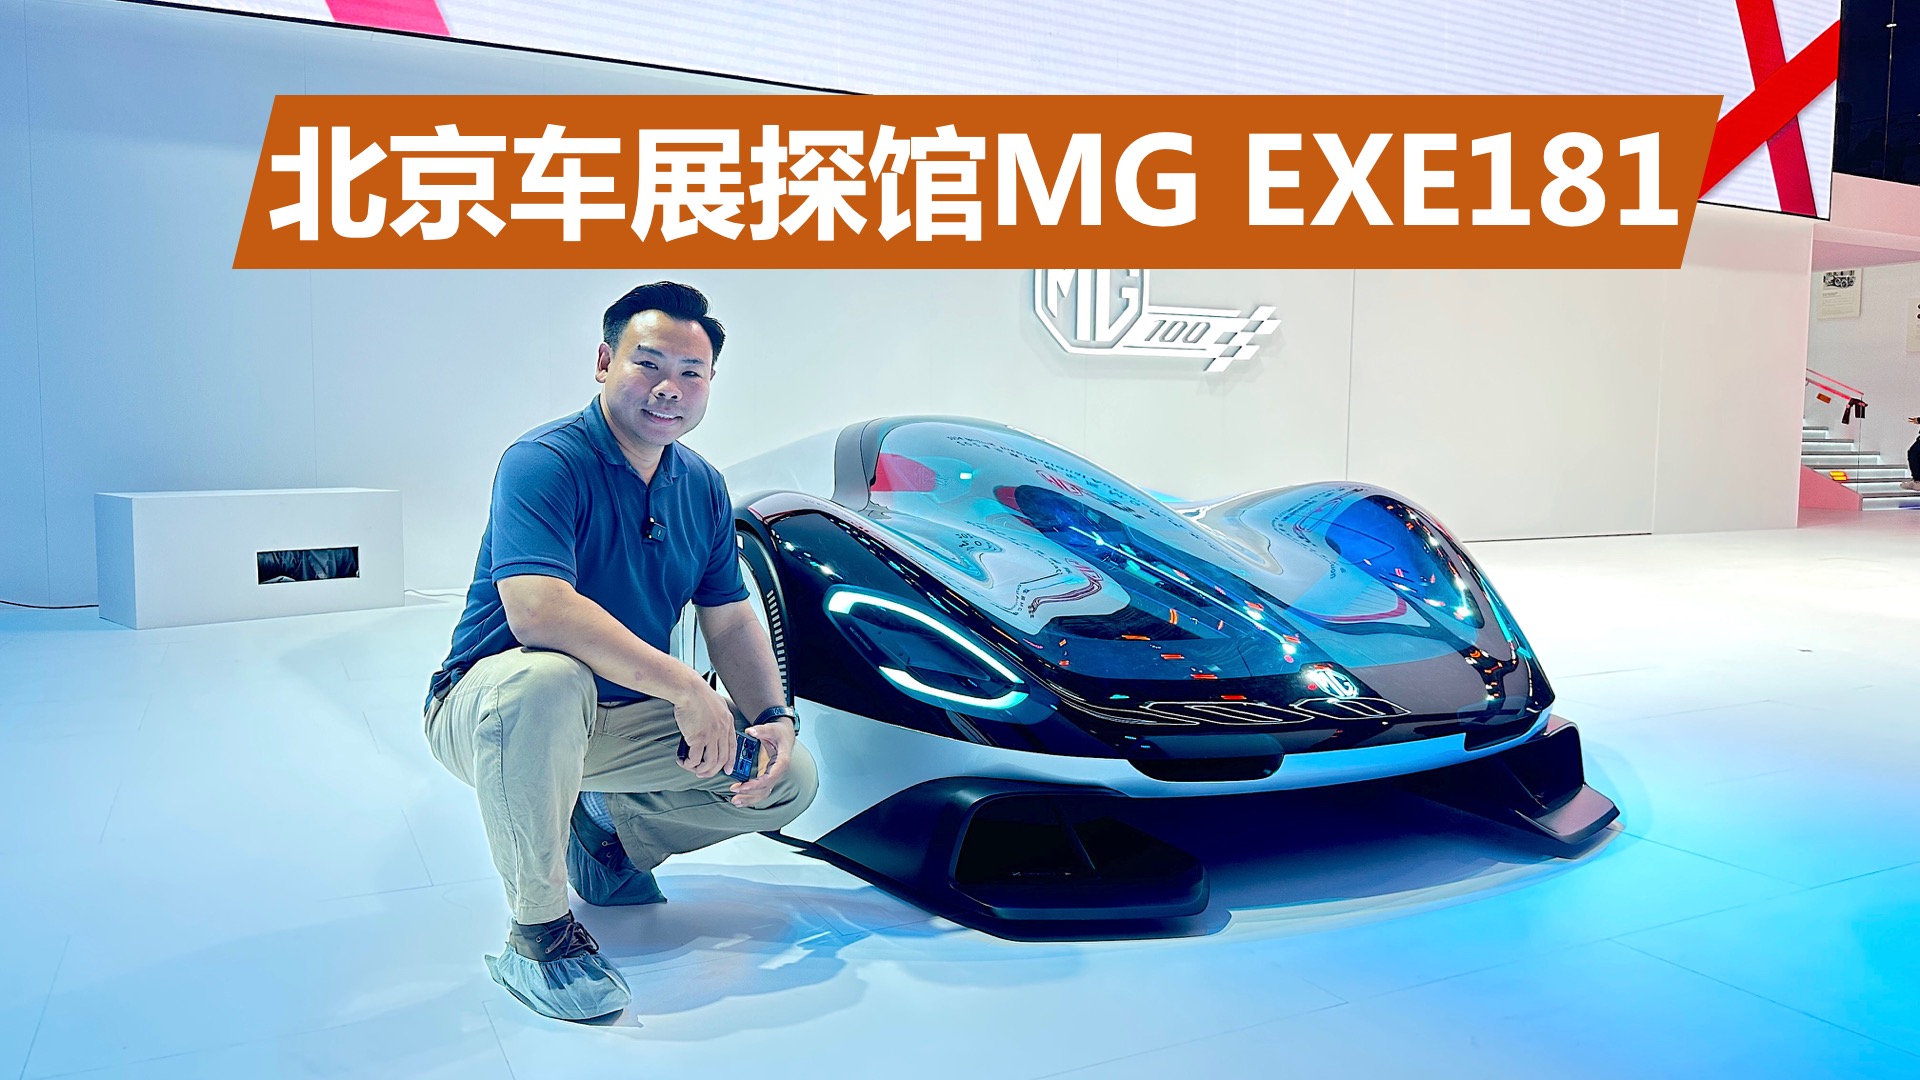 带壳的F1赛车，零百加速1秒级，北京车展探馆MG EXE181